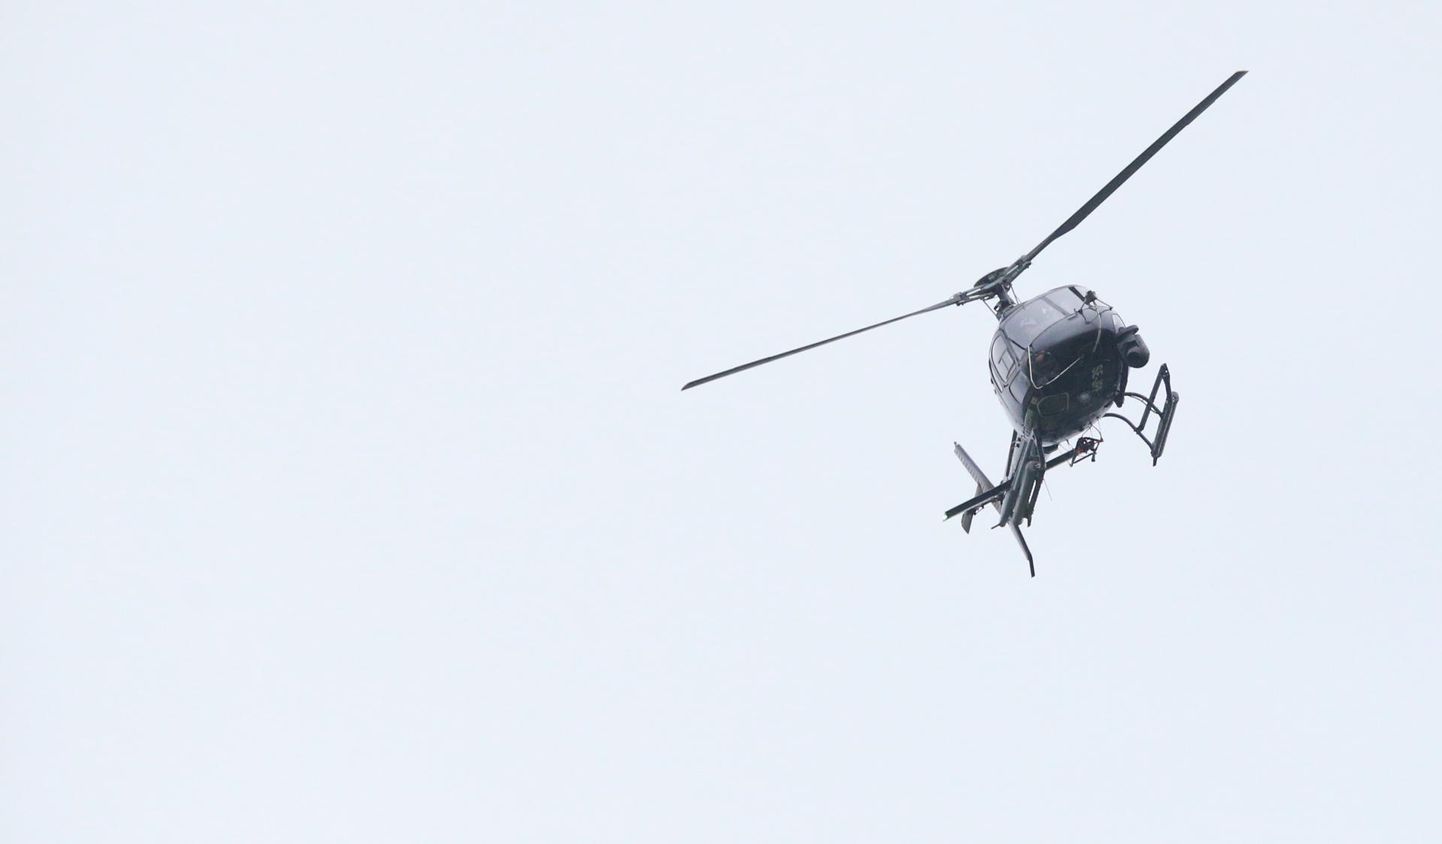 Vene helikopter rikkus õhupiiri. Foto on illustratiivne.